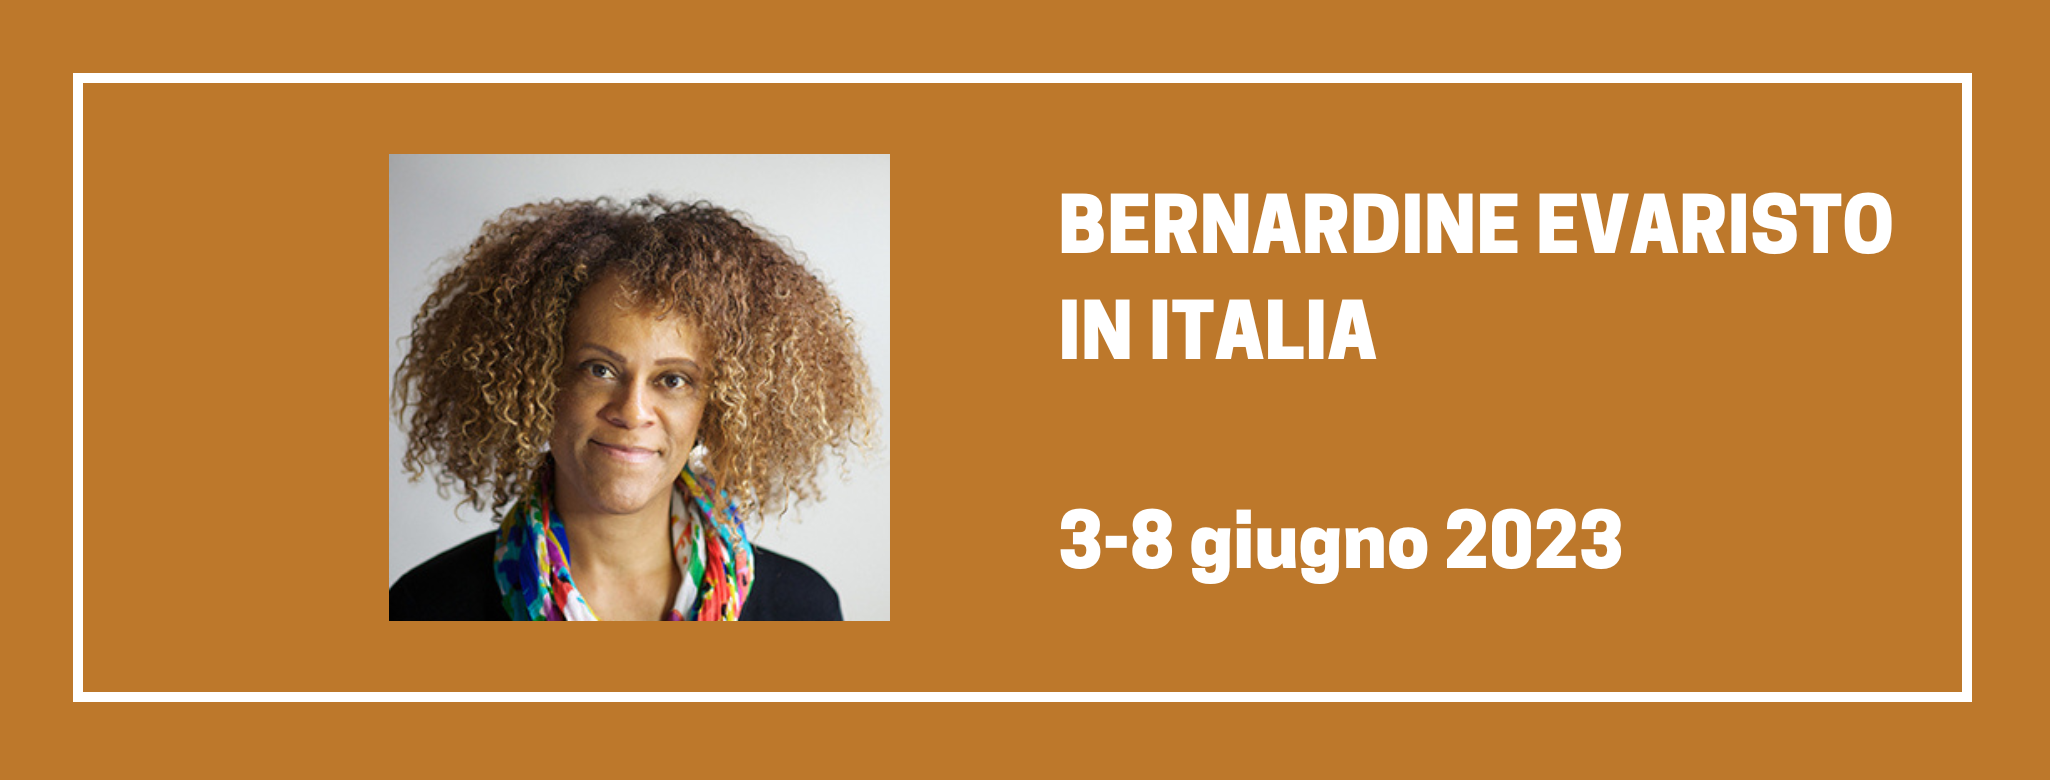 Bernardine Evaristo in Italia